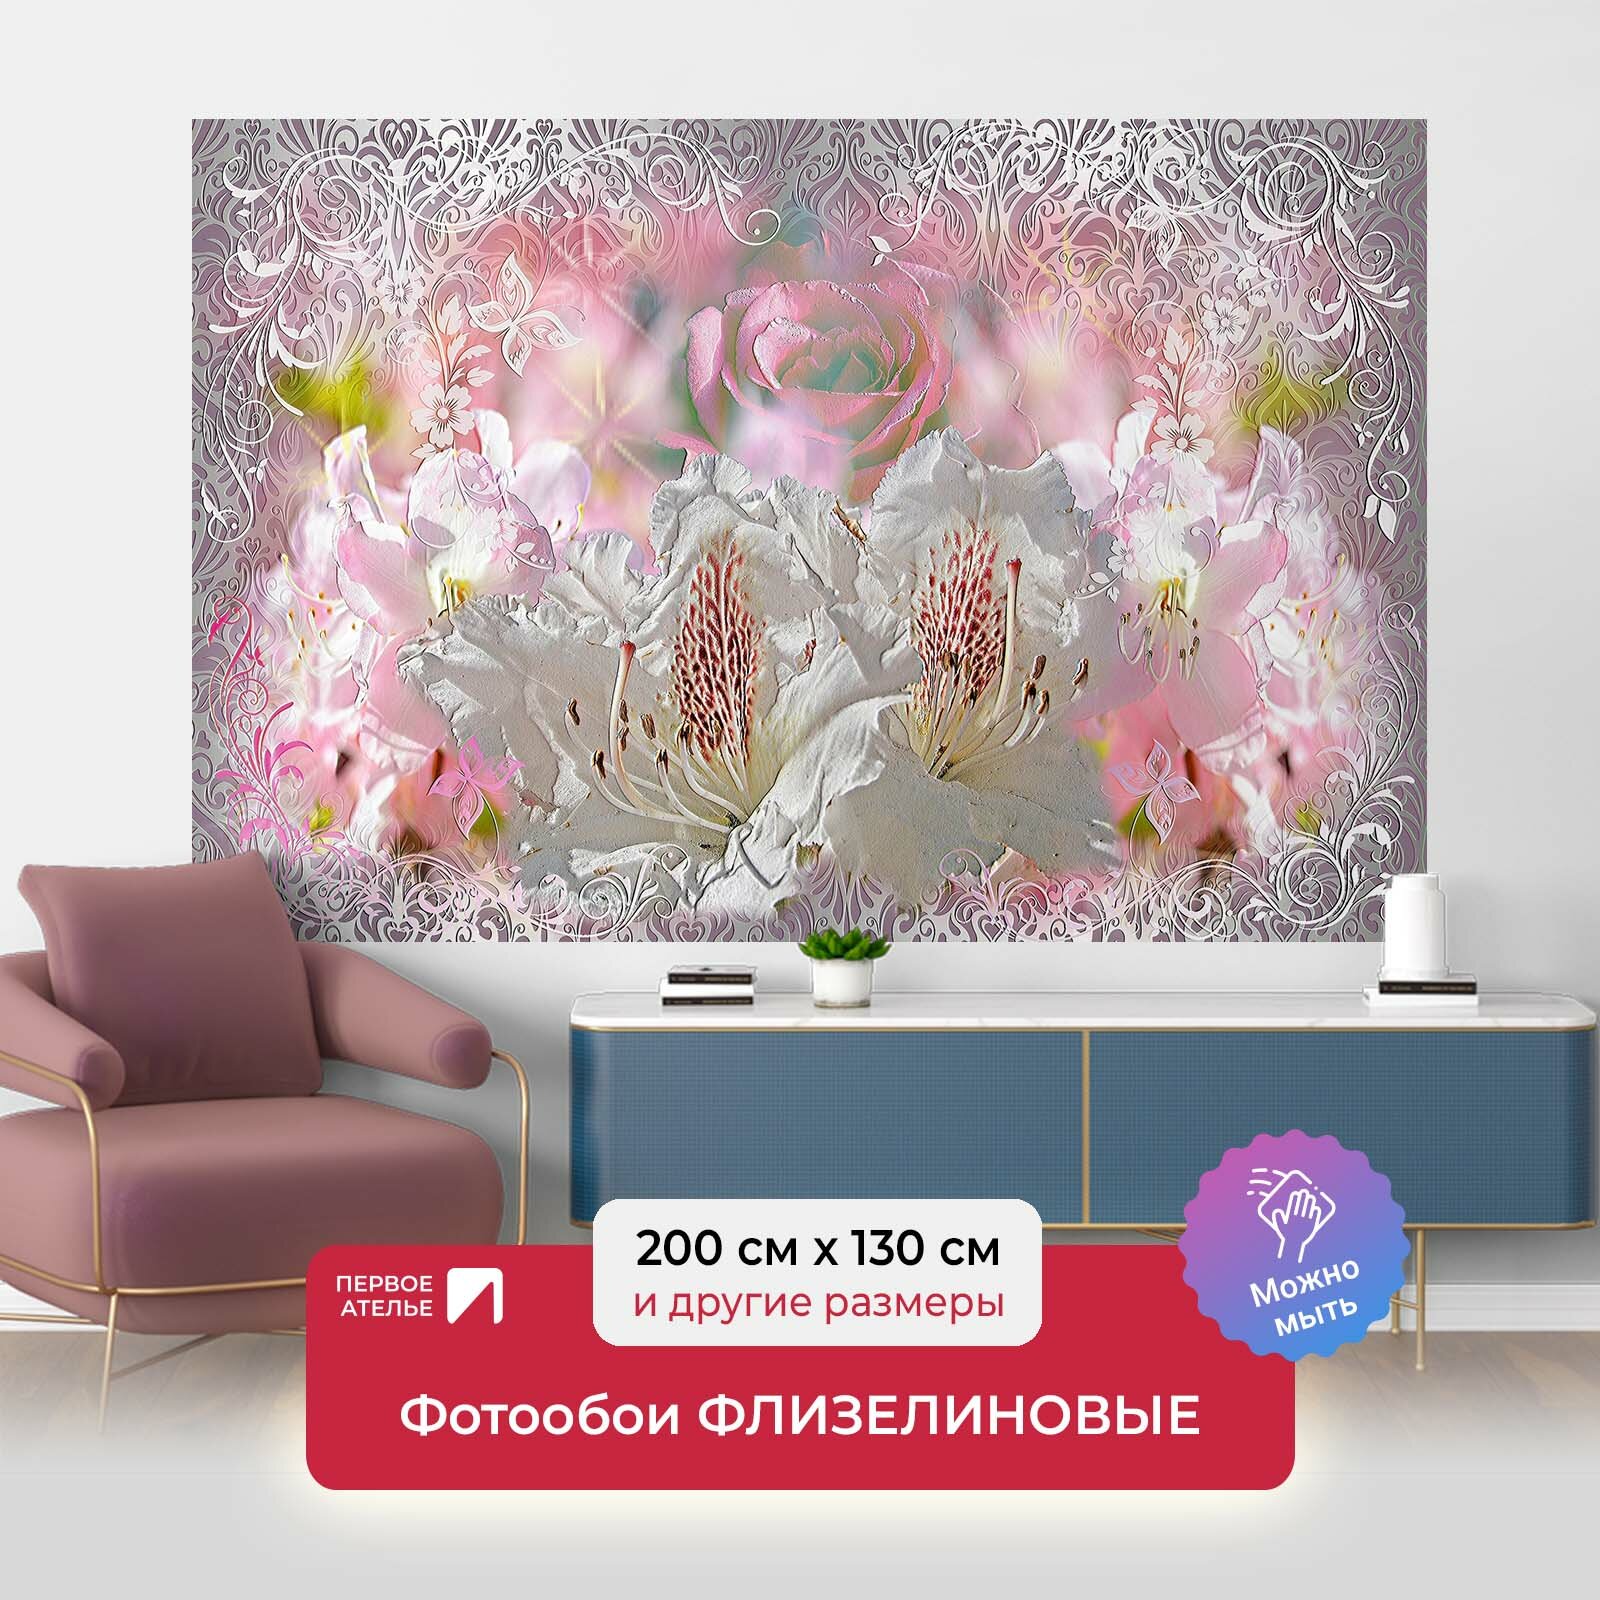 Фотообои на стену первое ателье "Абстракция с цветами и узорами" 200х130 см (ШхВ), флизелиновые Premium